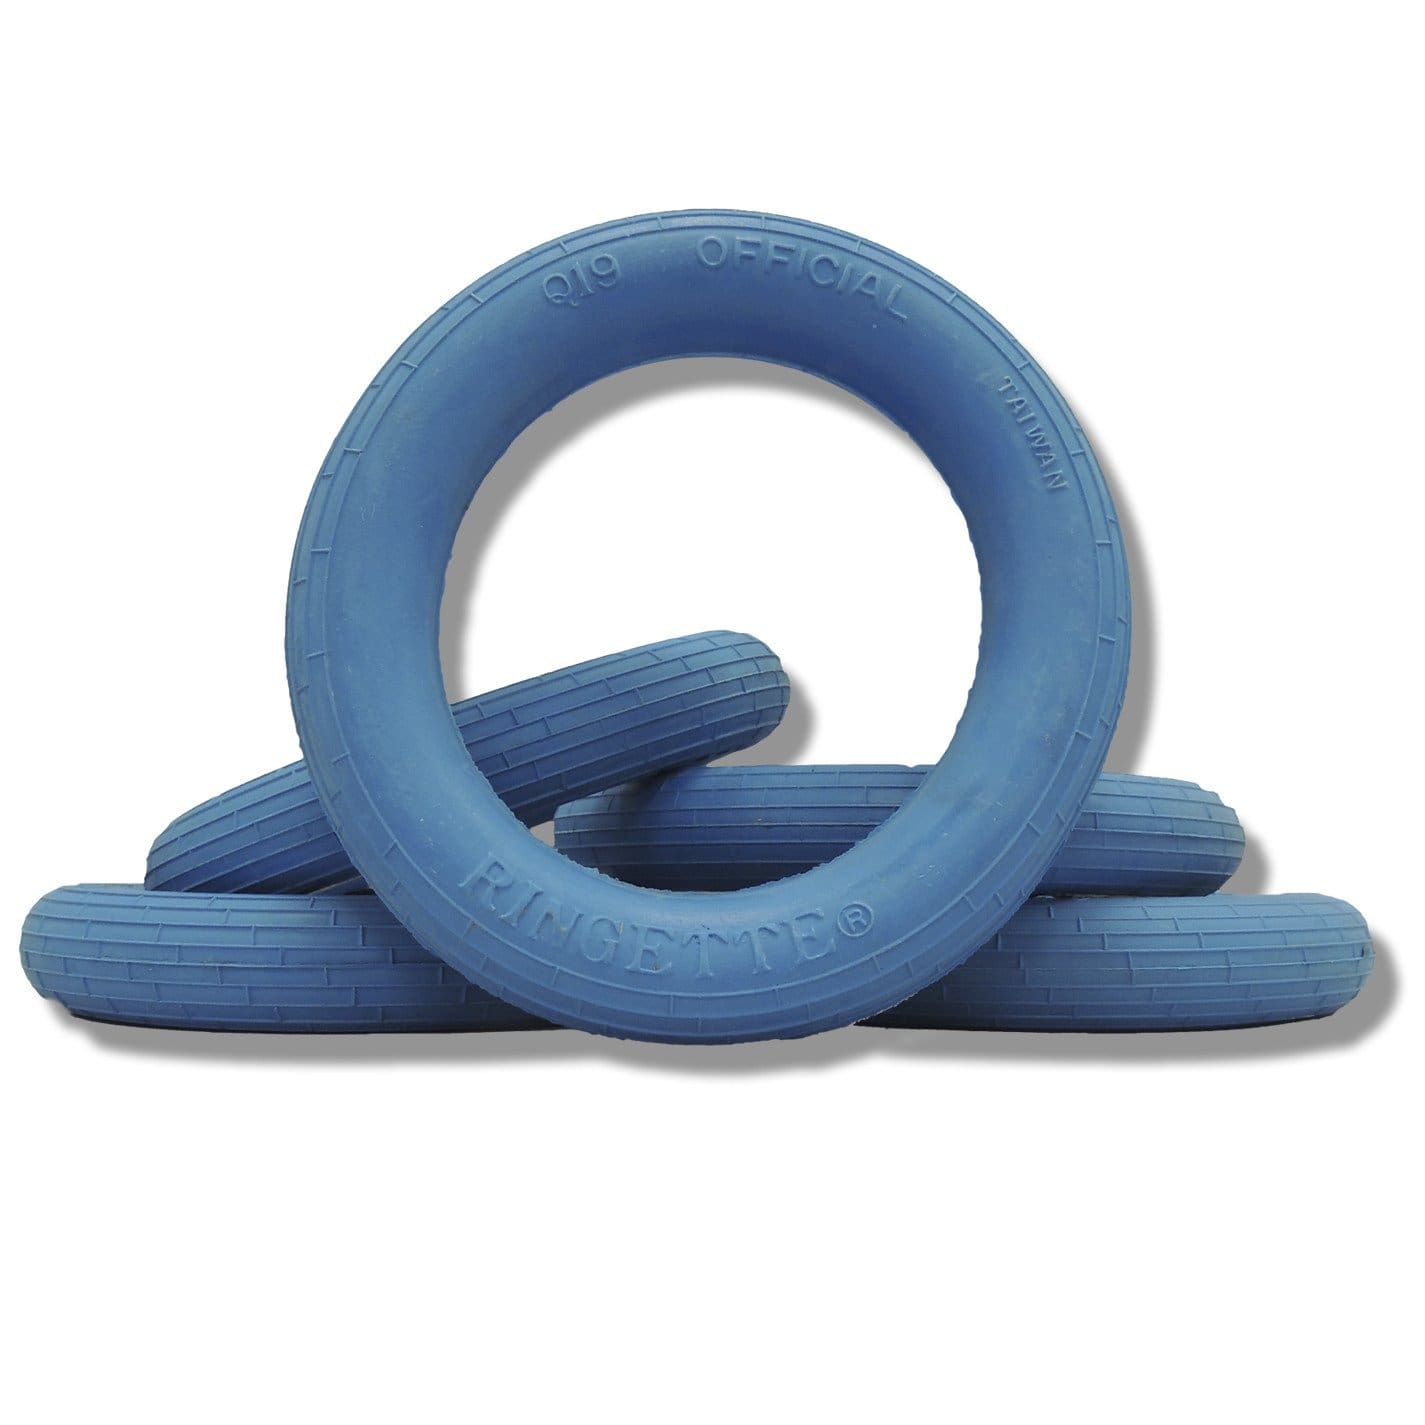 official-ringette-ring-blue